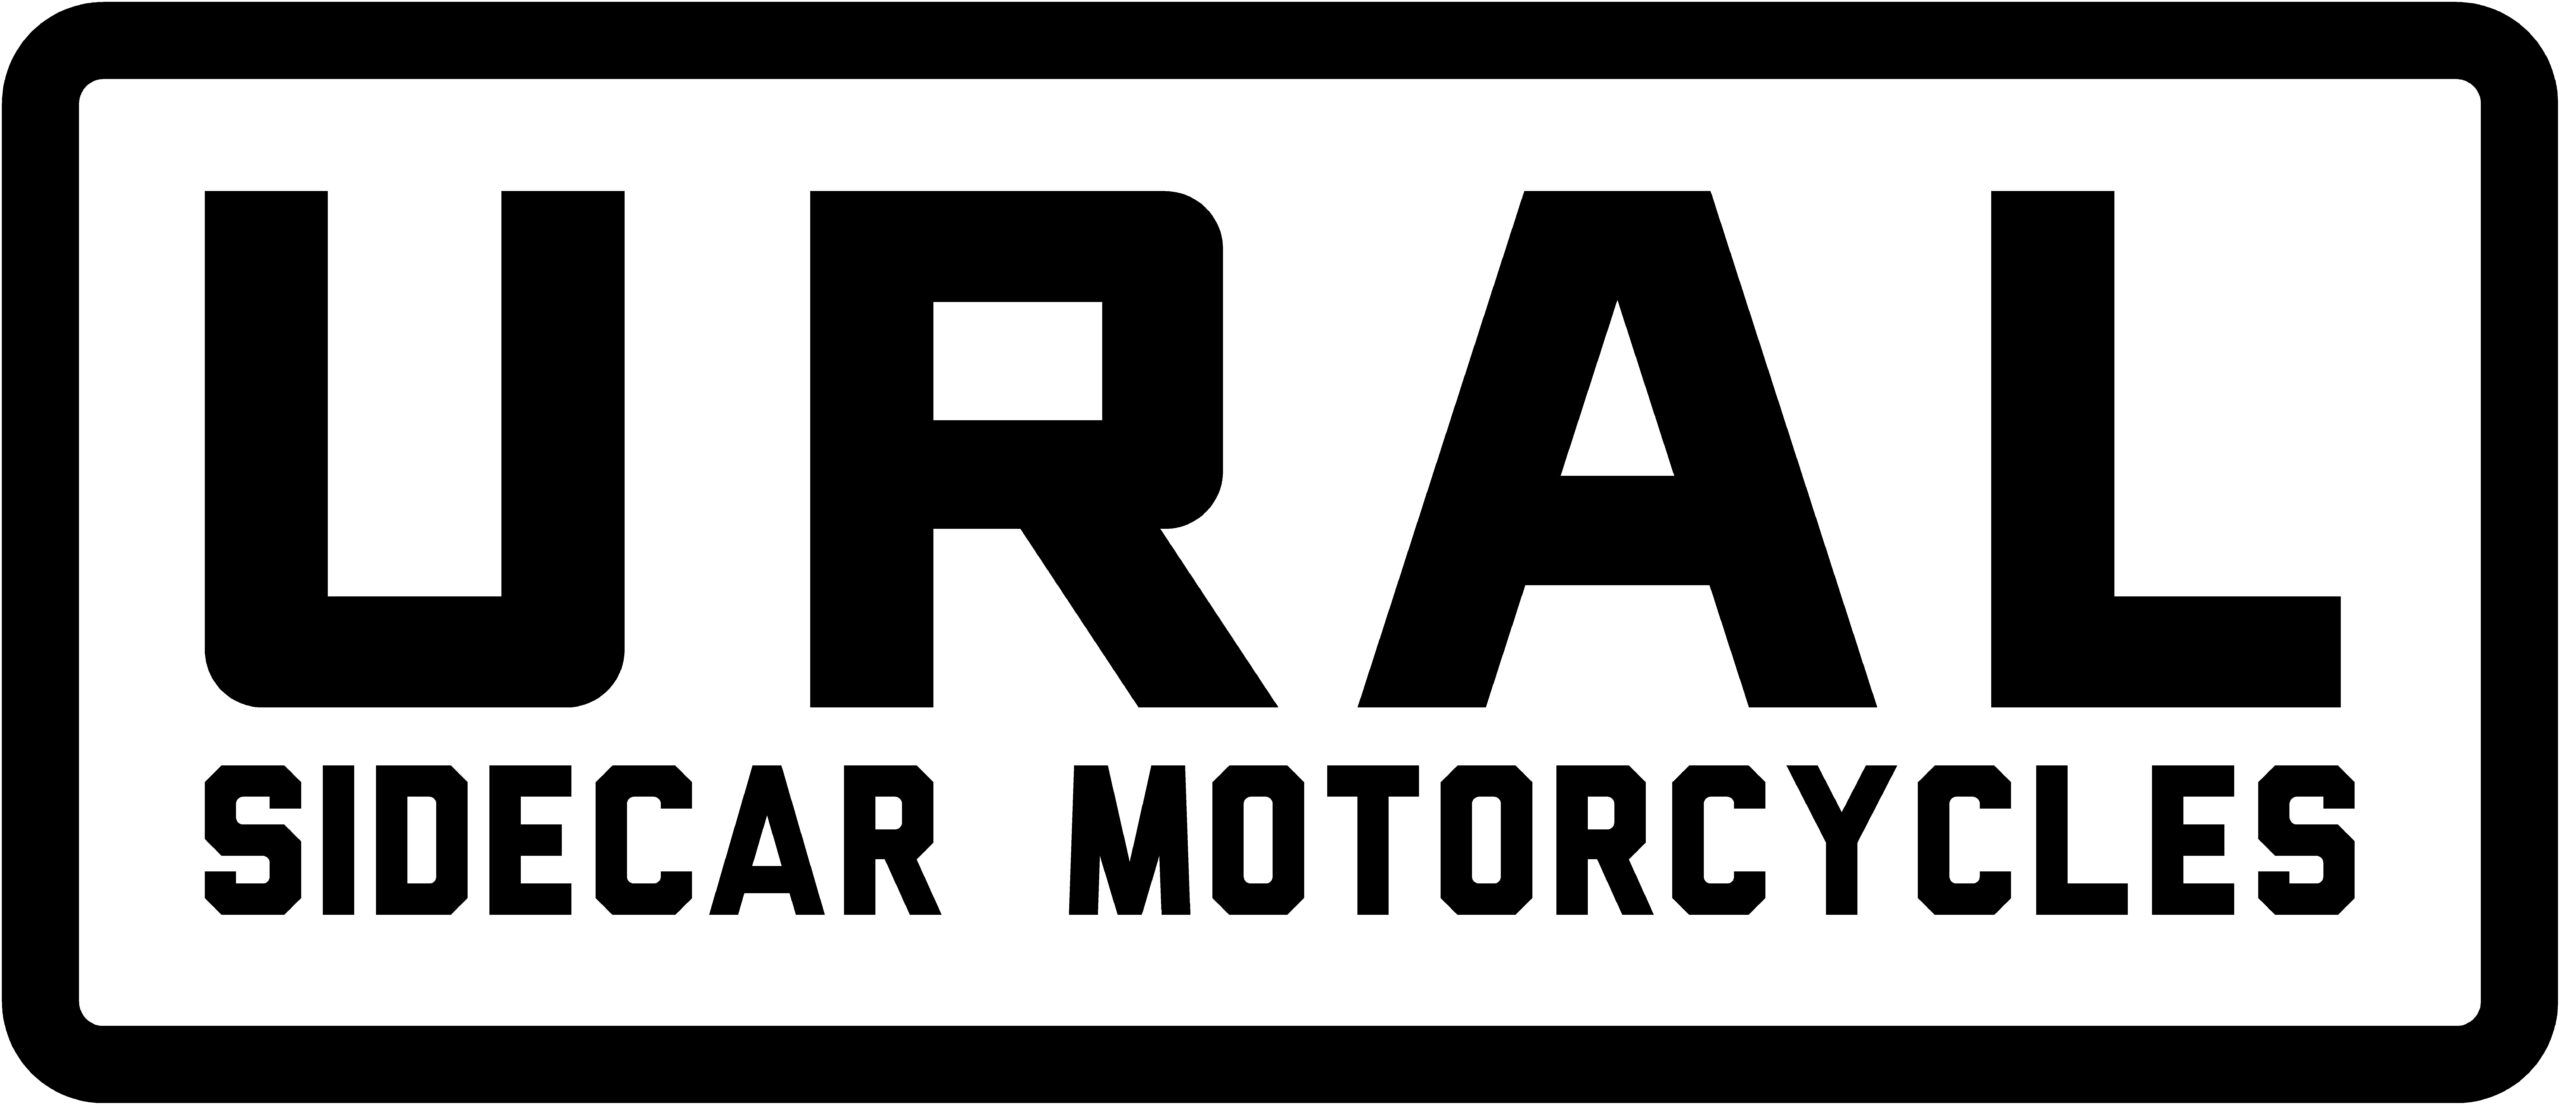 Ural sidecar motorcycles logo